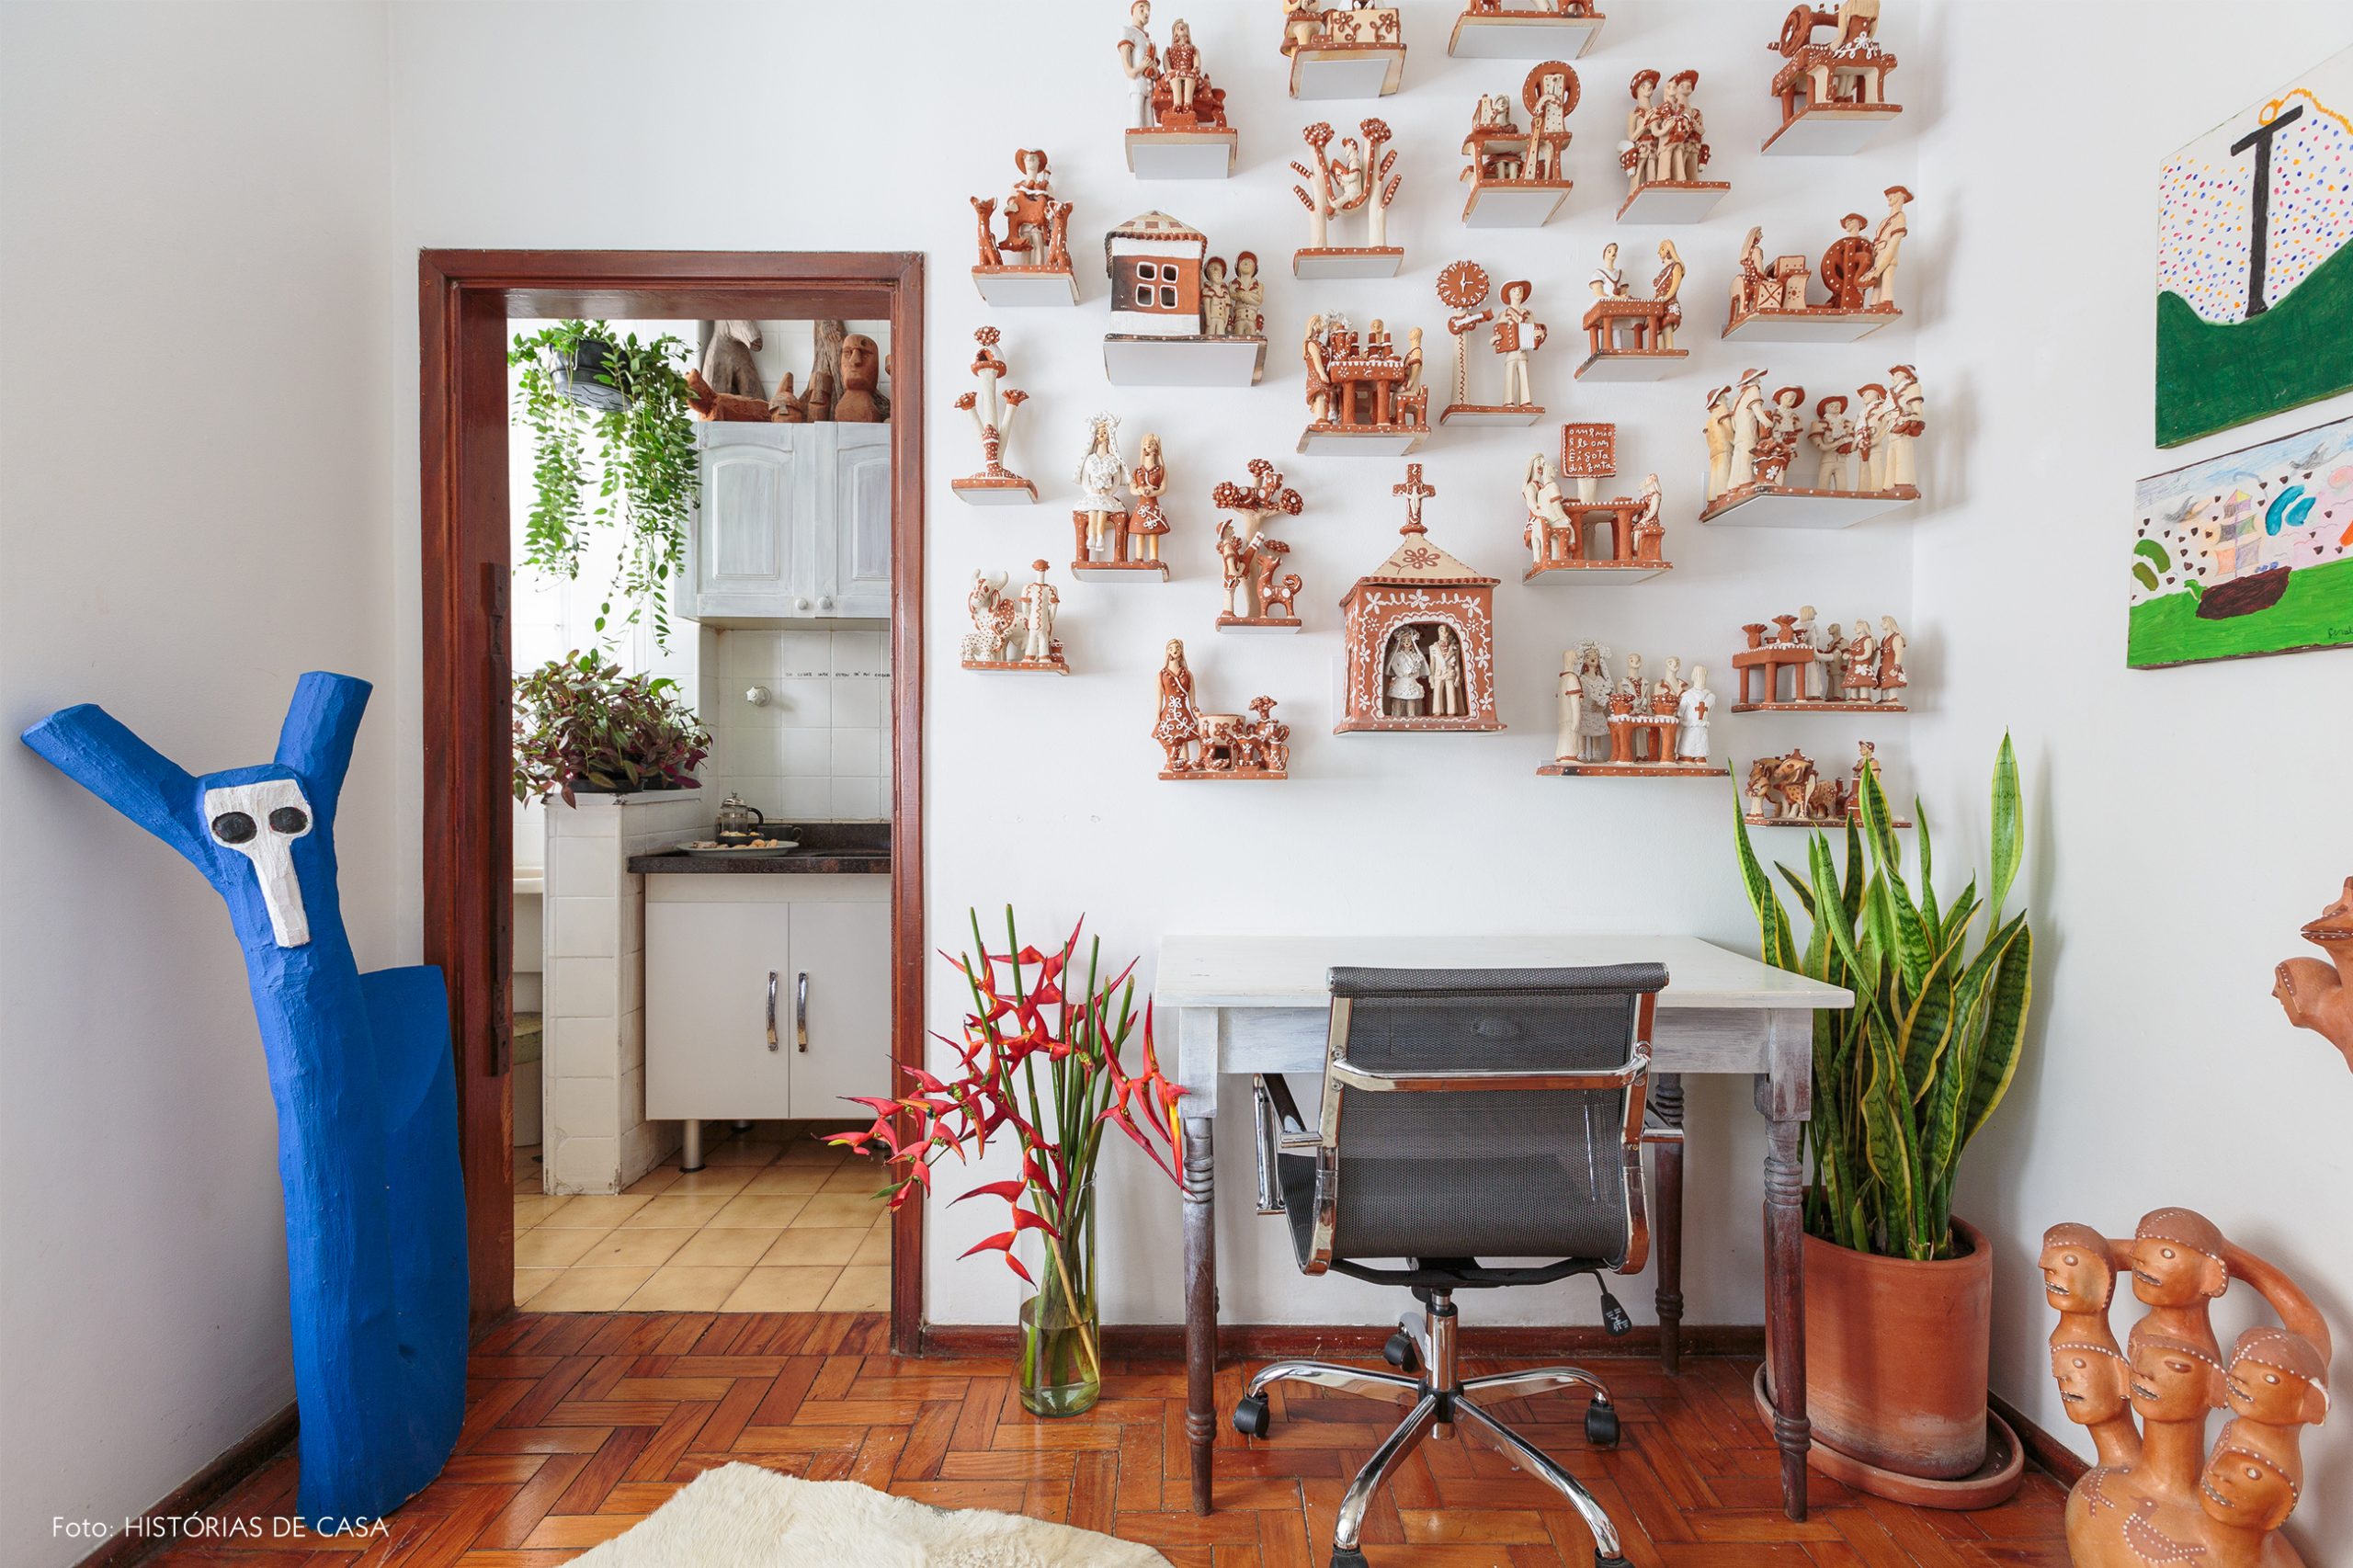 decoração home office com ceramicas e objeto de madeira decorativos